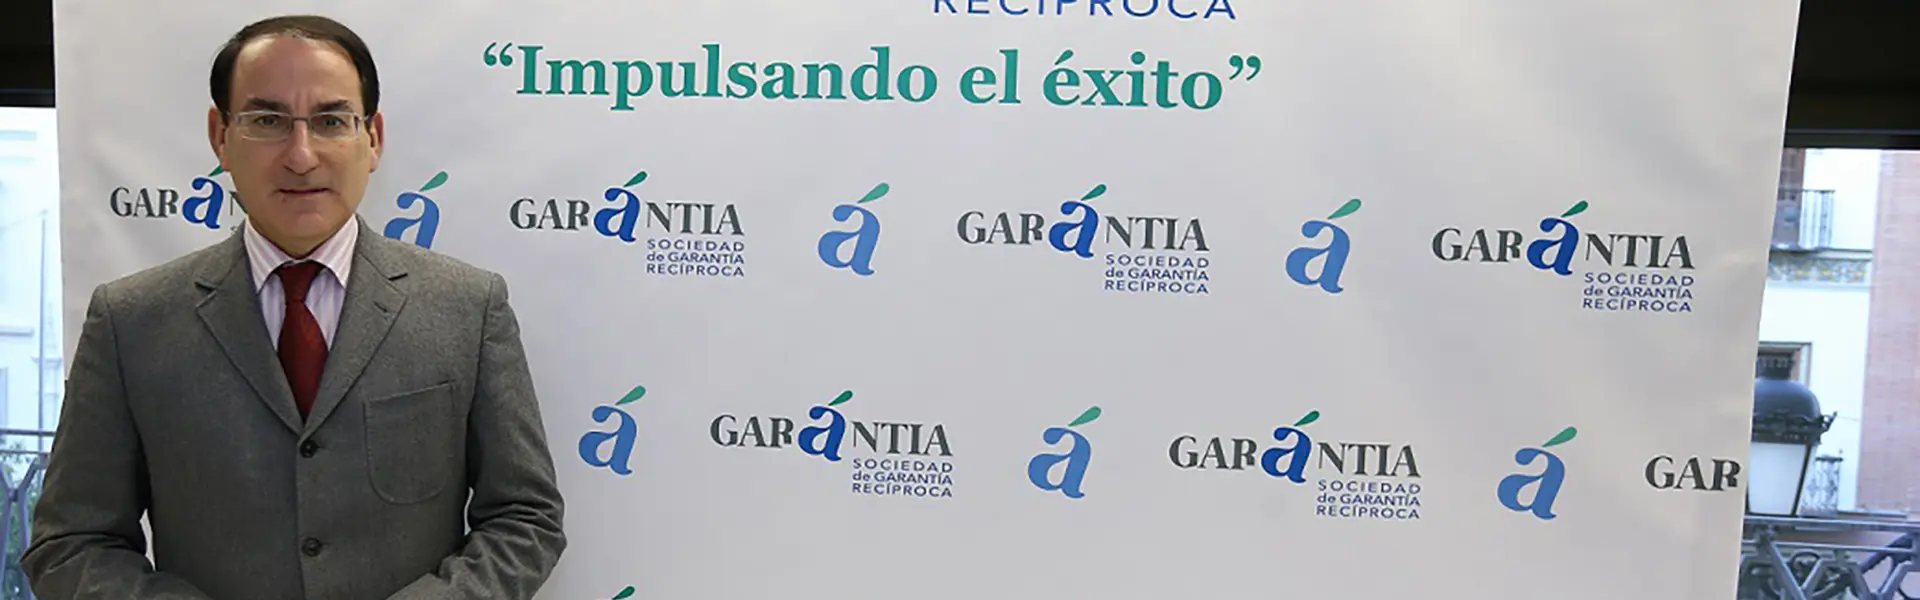 Garántia cumple su cuarto año de servicio a las pymes y autónomos de Andalucía ultimas noticias